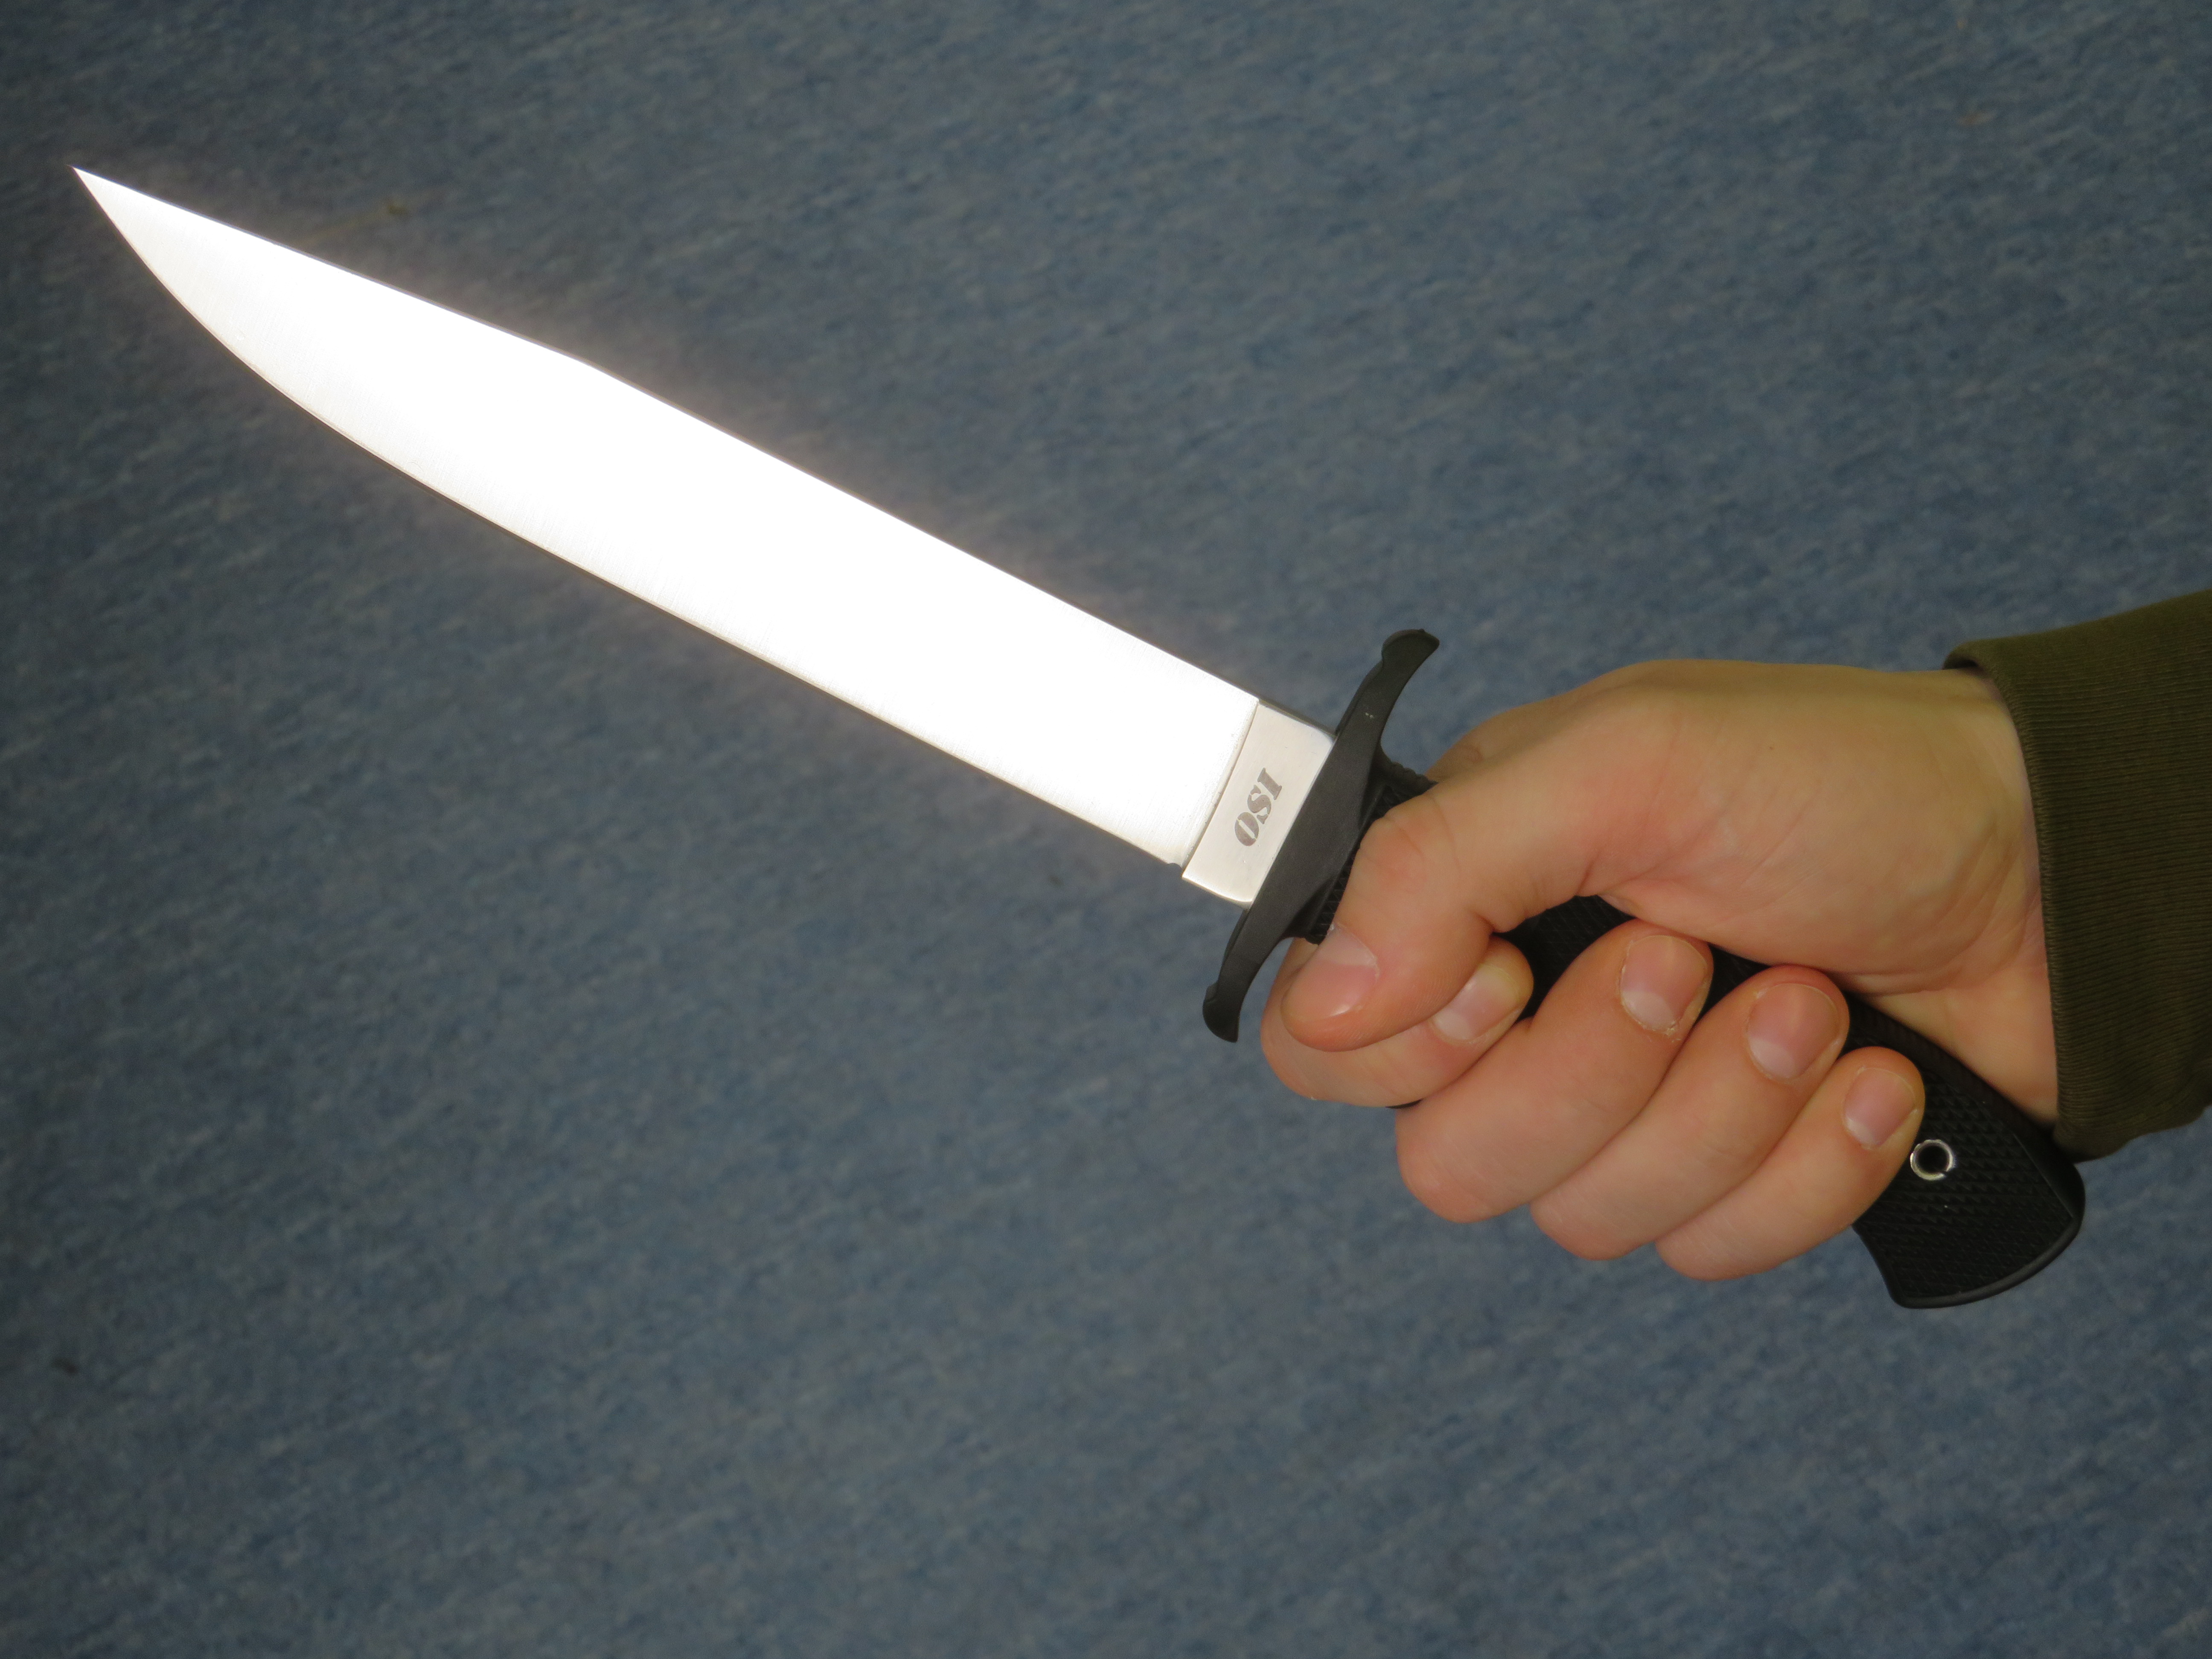 Rukojeť nože Cold Steel OSI je potažena speciálním materiálem Kray-Ex, která zbraňuje prokluzu.